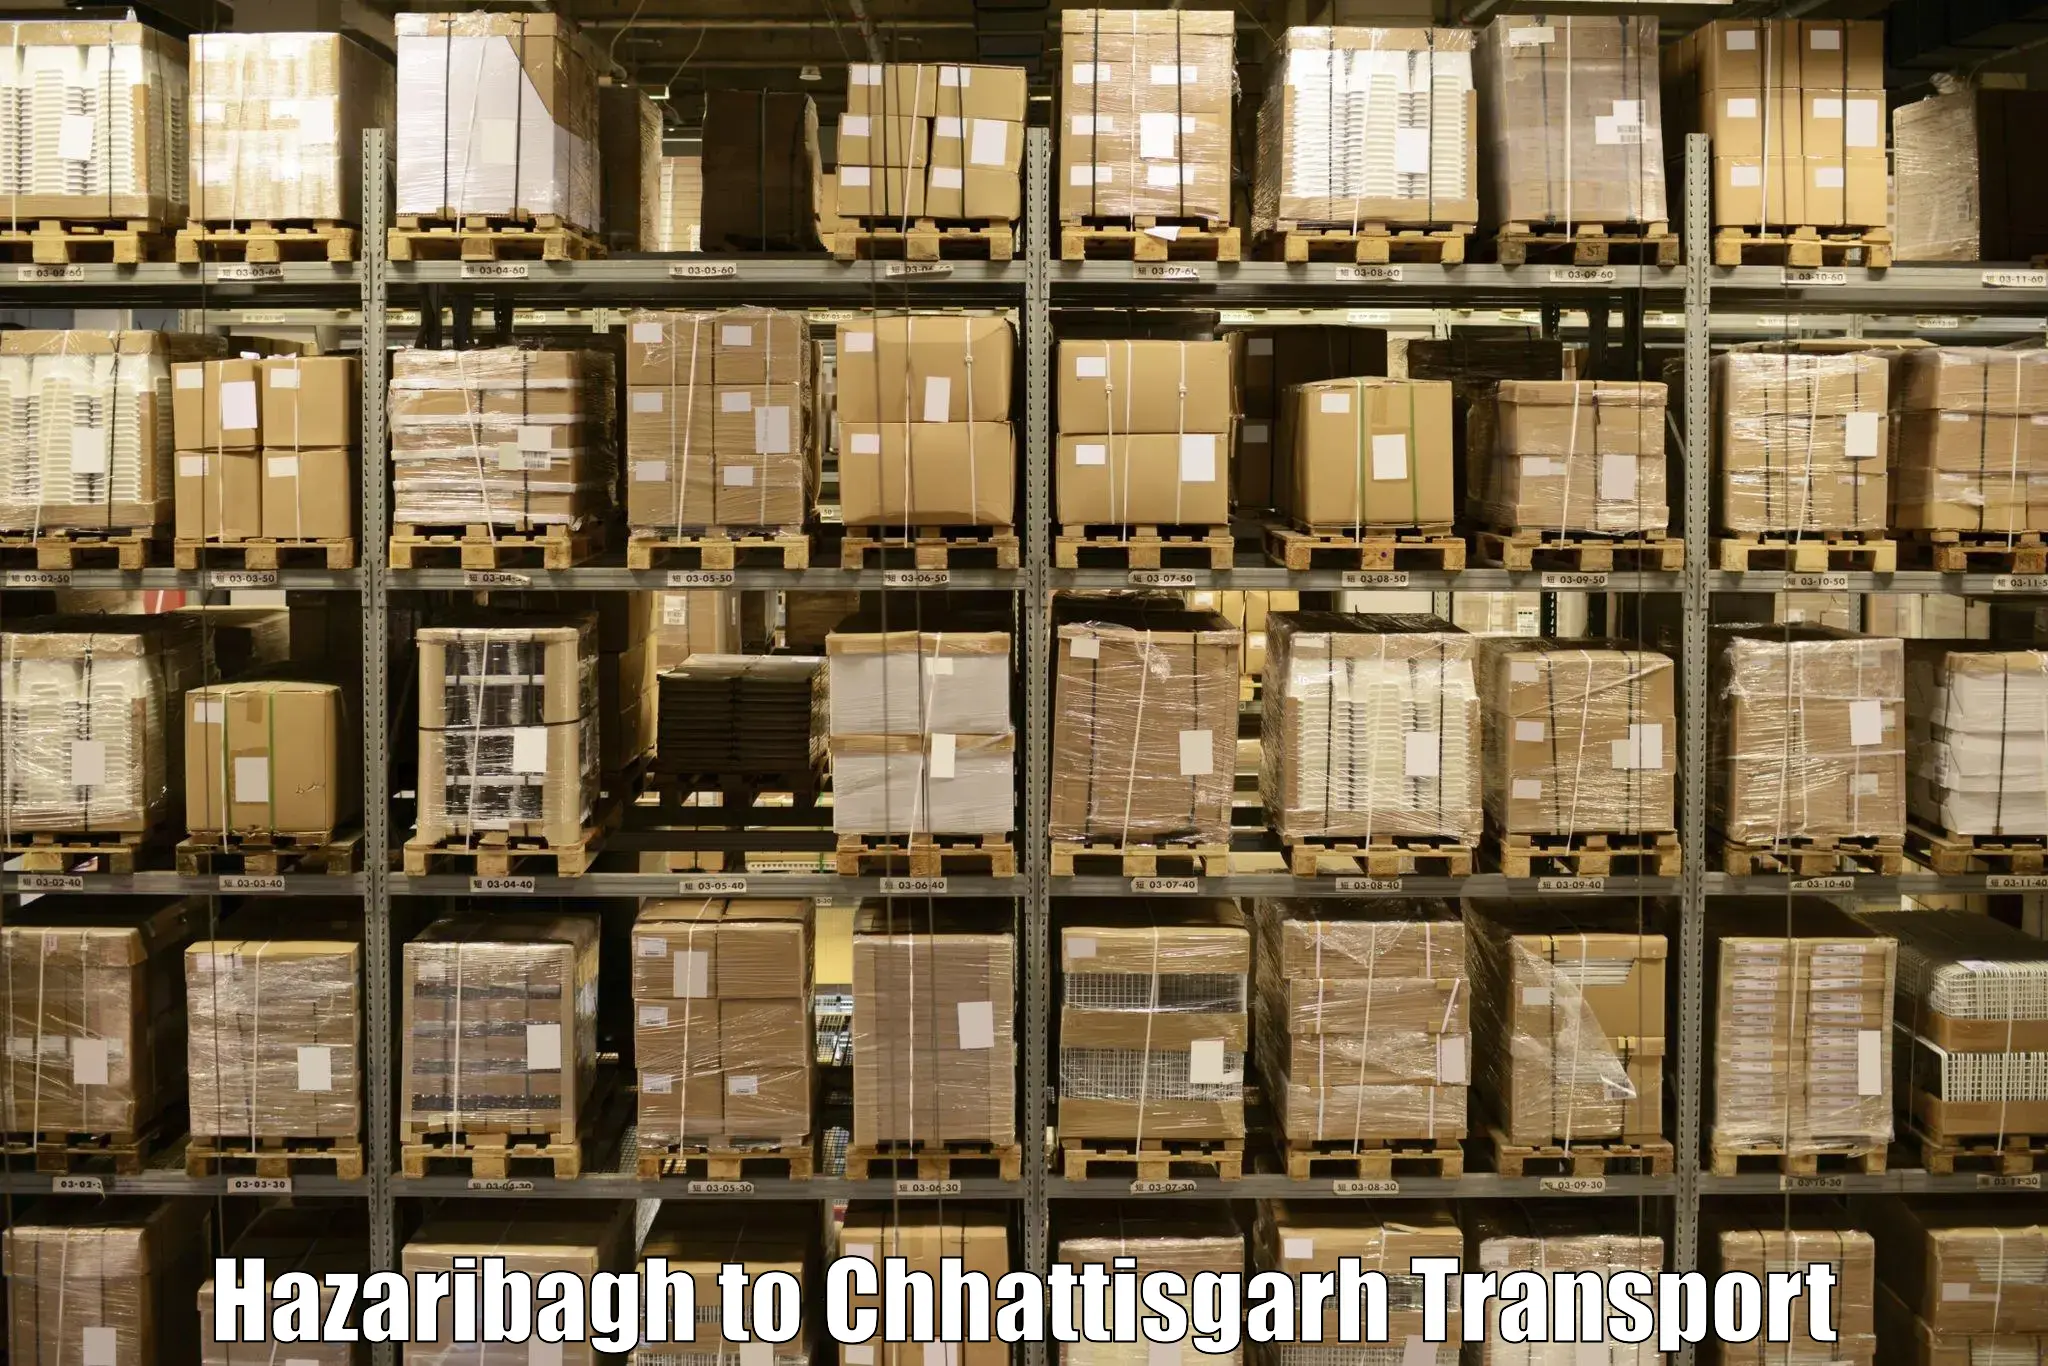 Transport services in Hazaribagh to Chhattisgarh